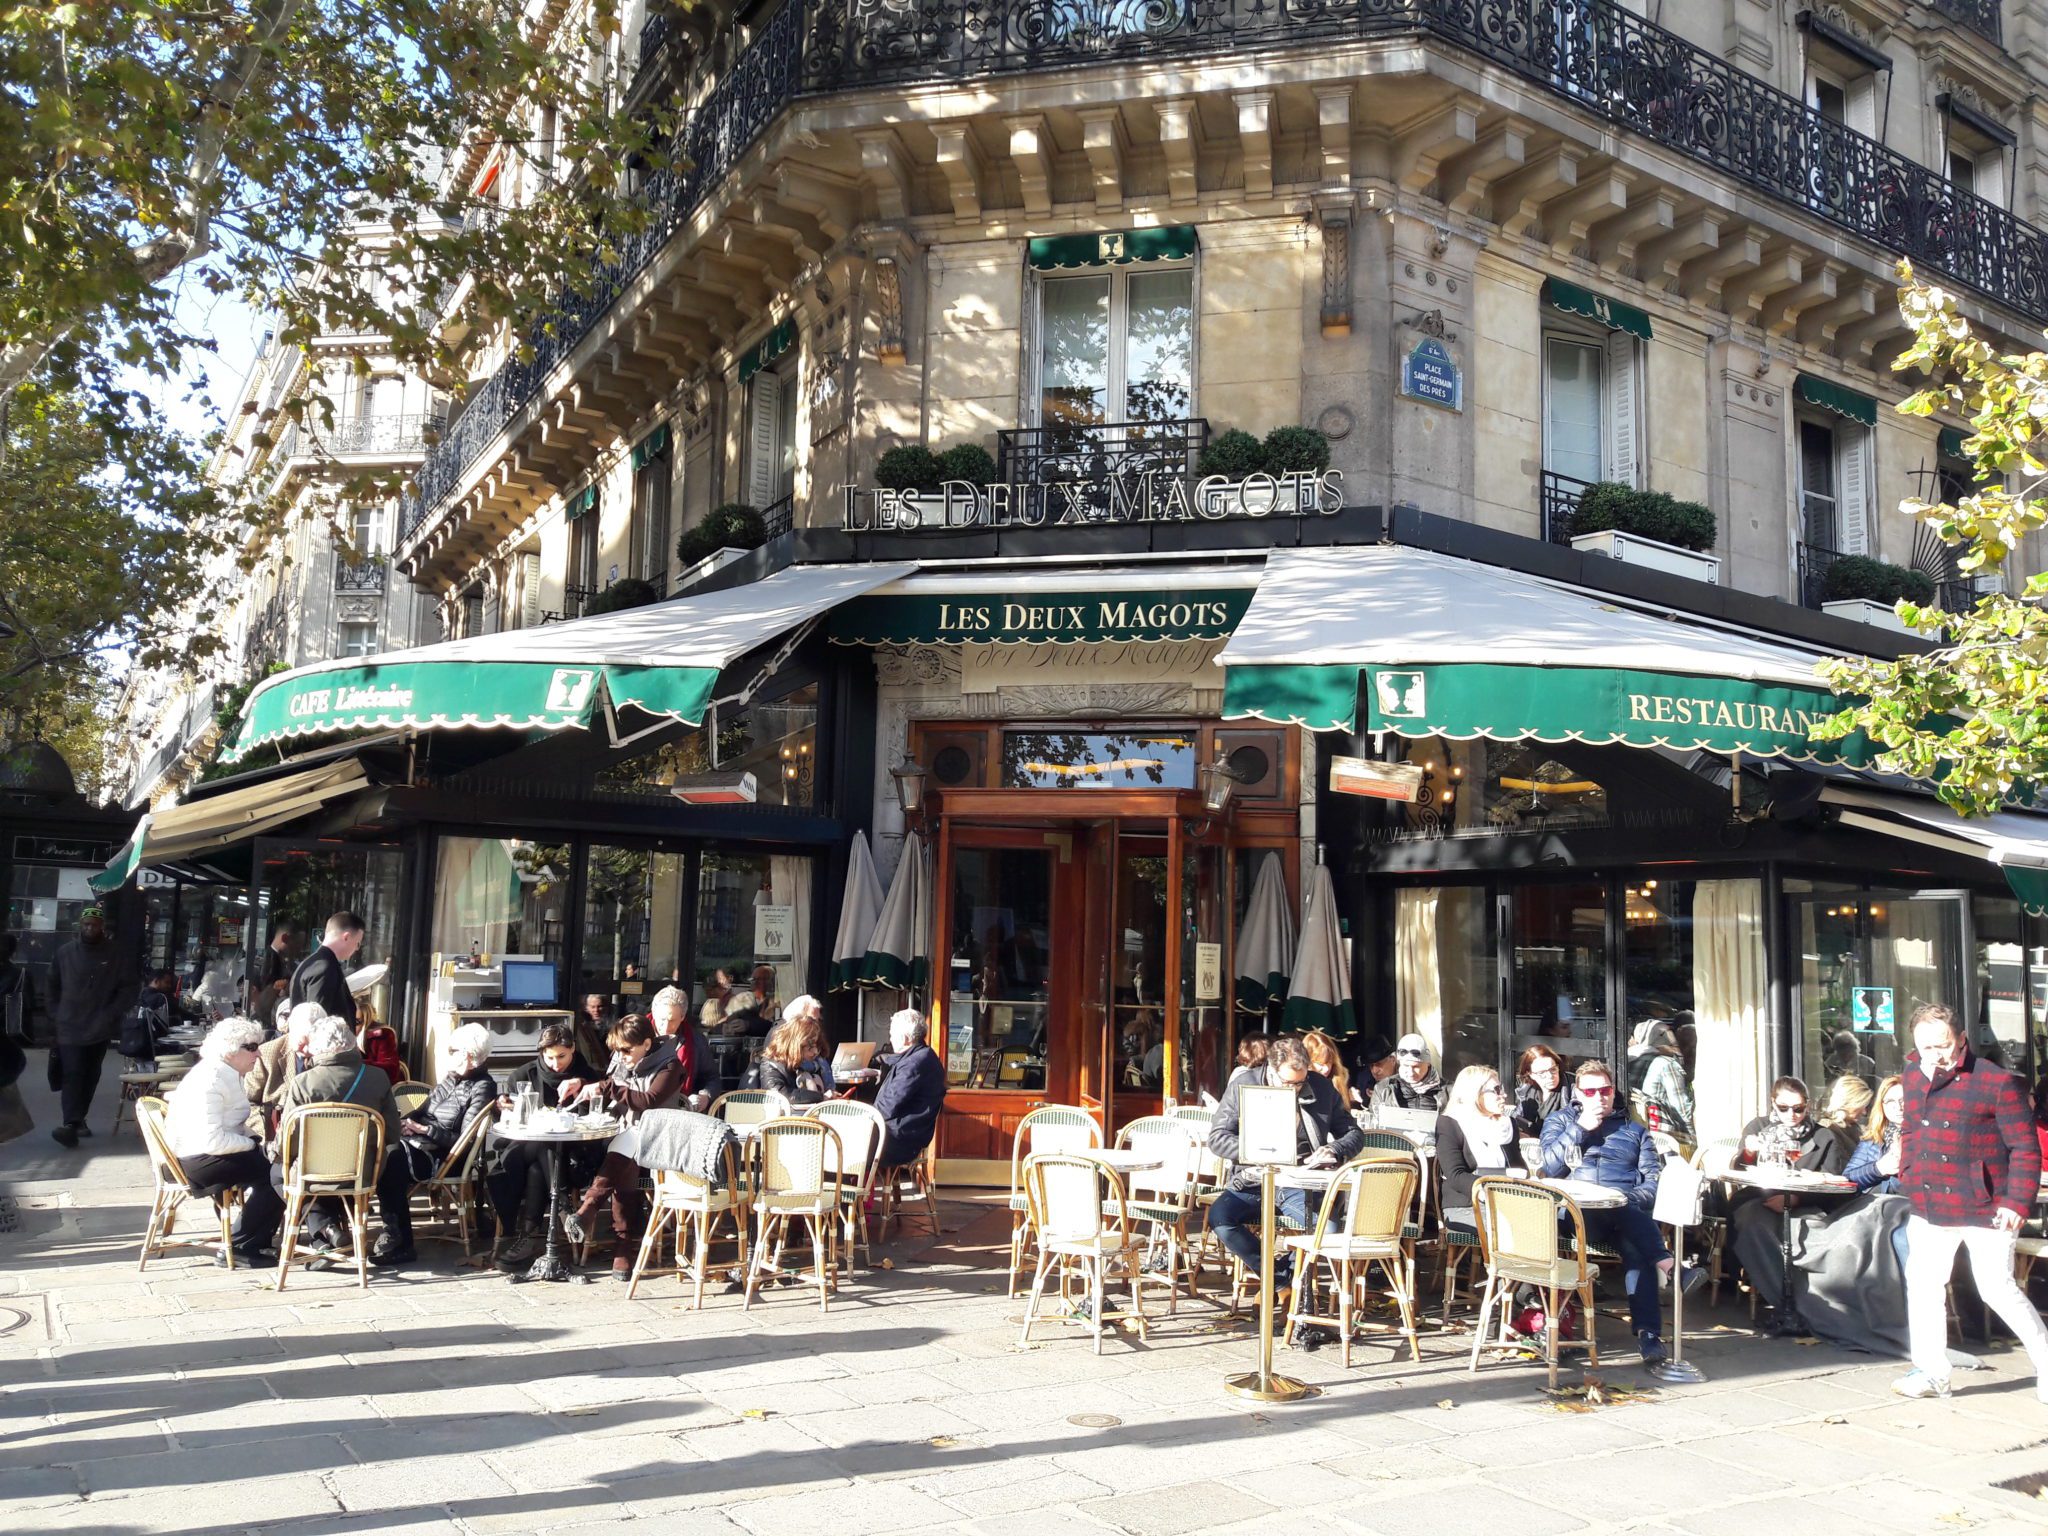 10 Best restaurants in Saint-Germain-des-Prés - Discover Walks Blog